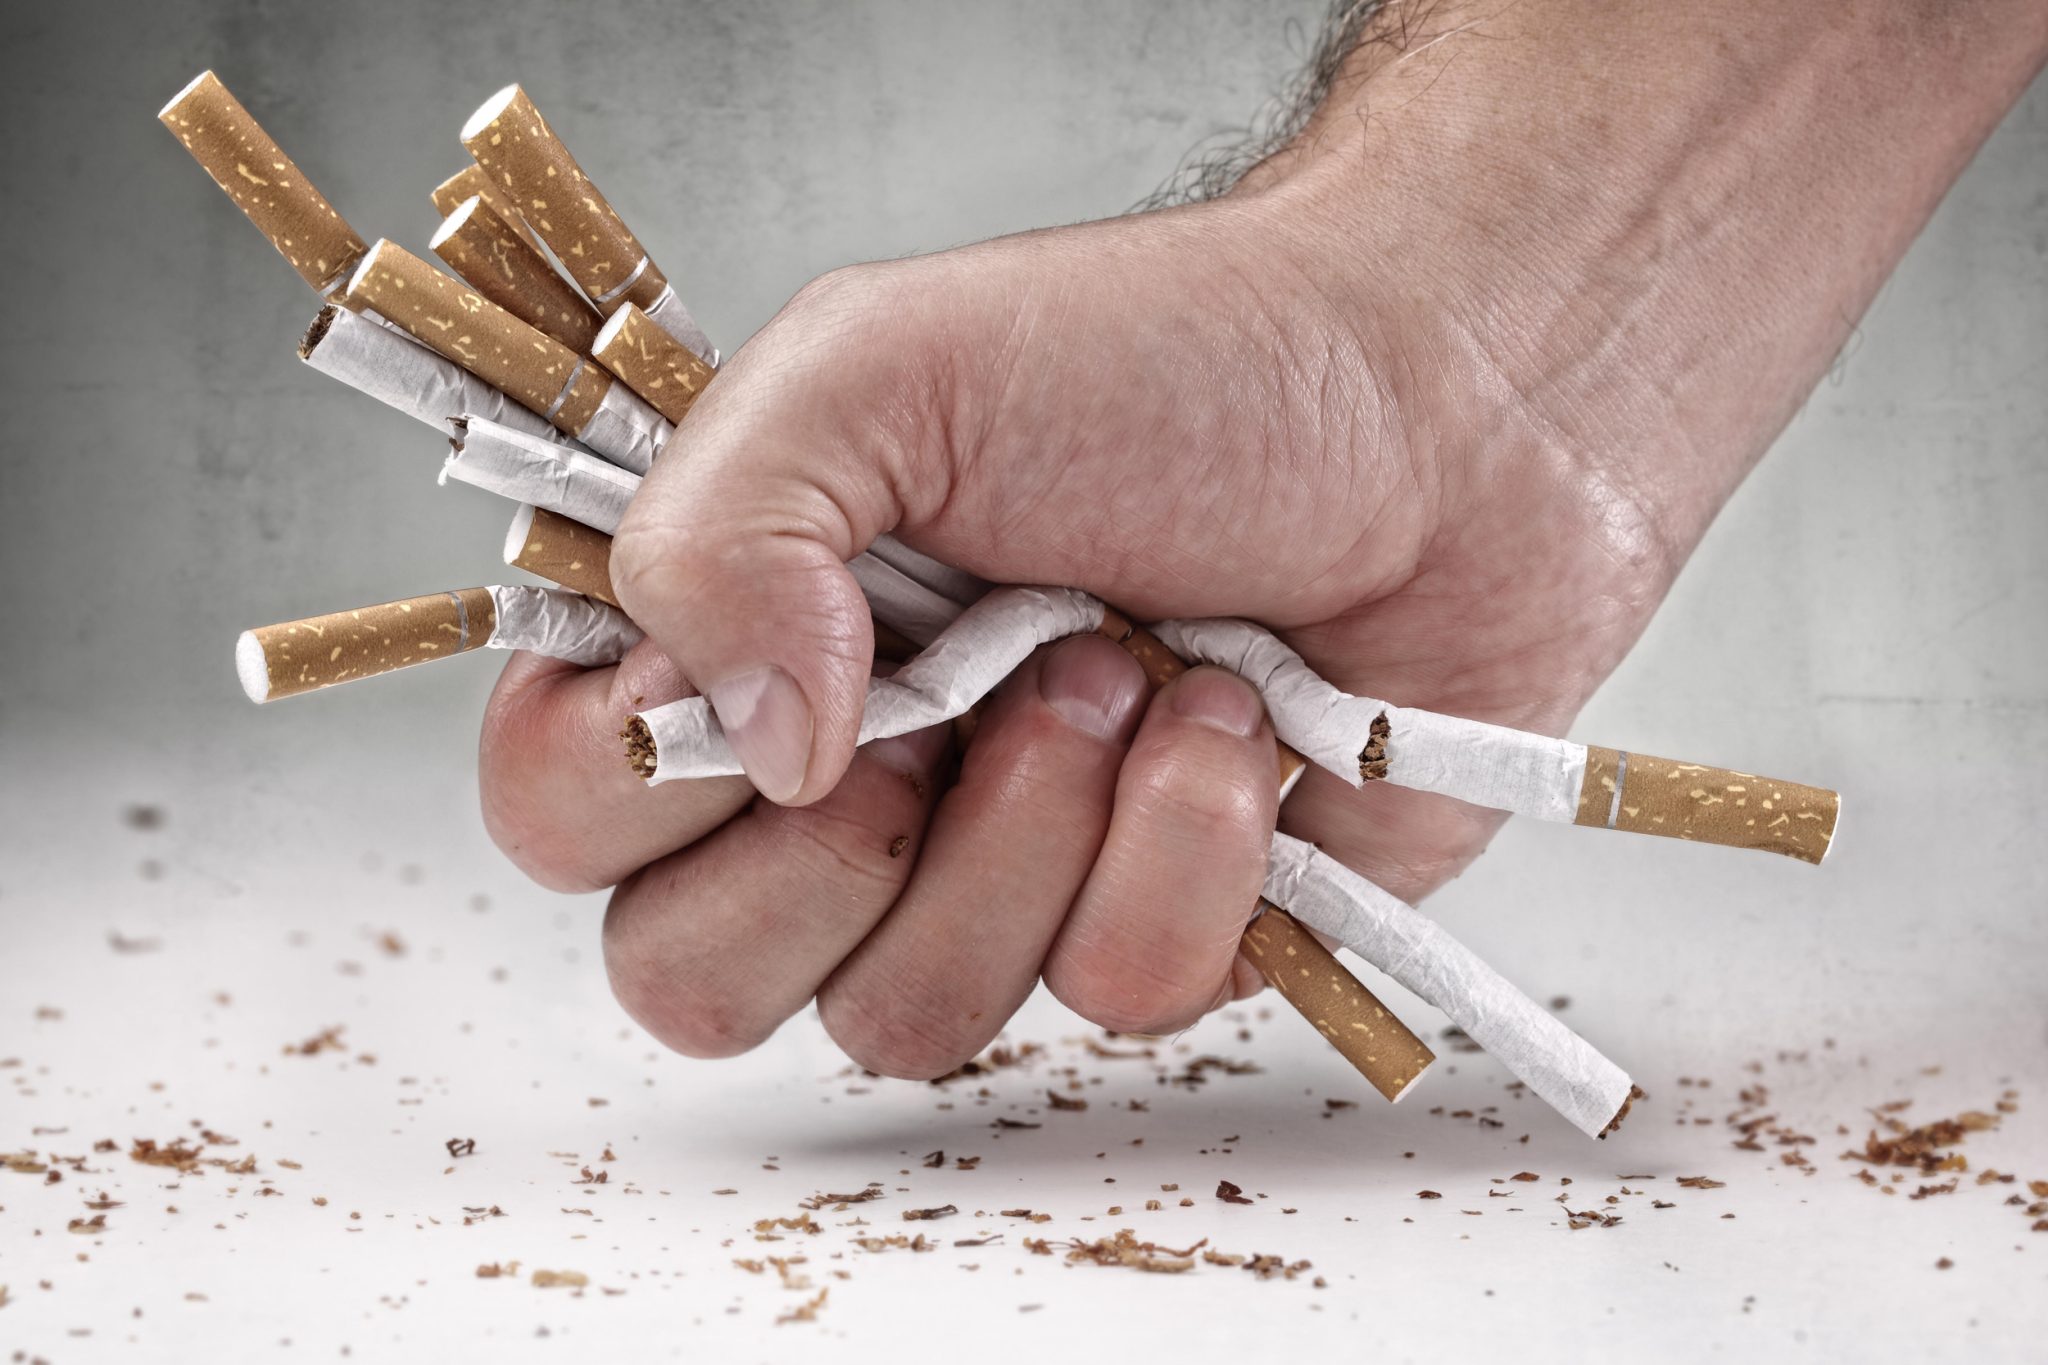 EuReporter: Viața fumătorilor este în pericol când li se refuză alternative la fumat